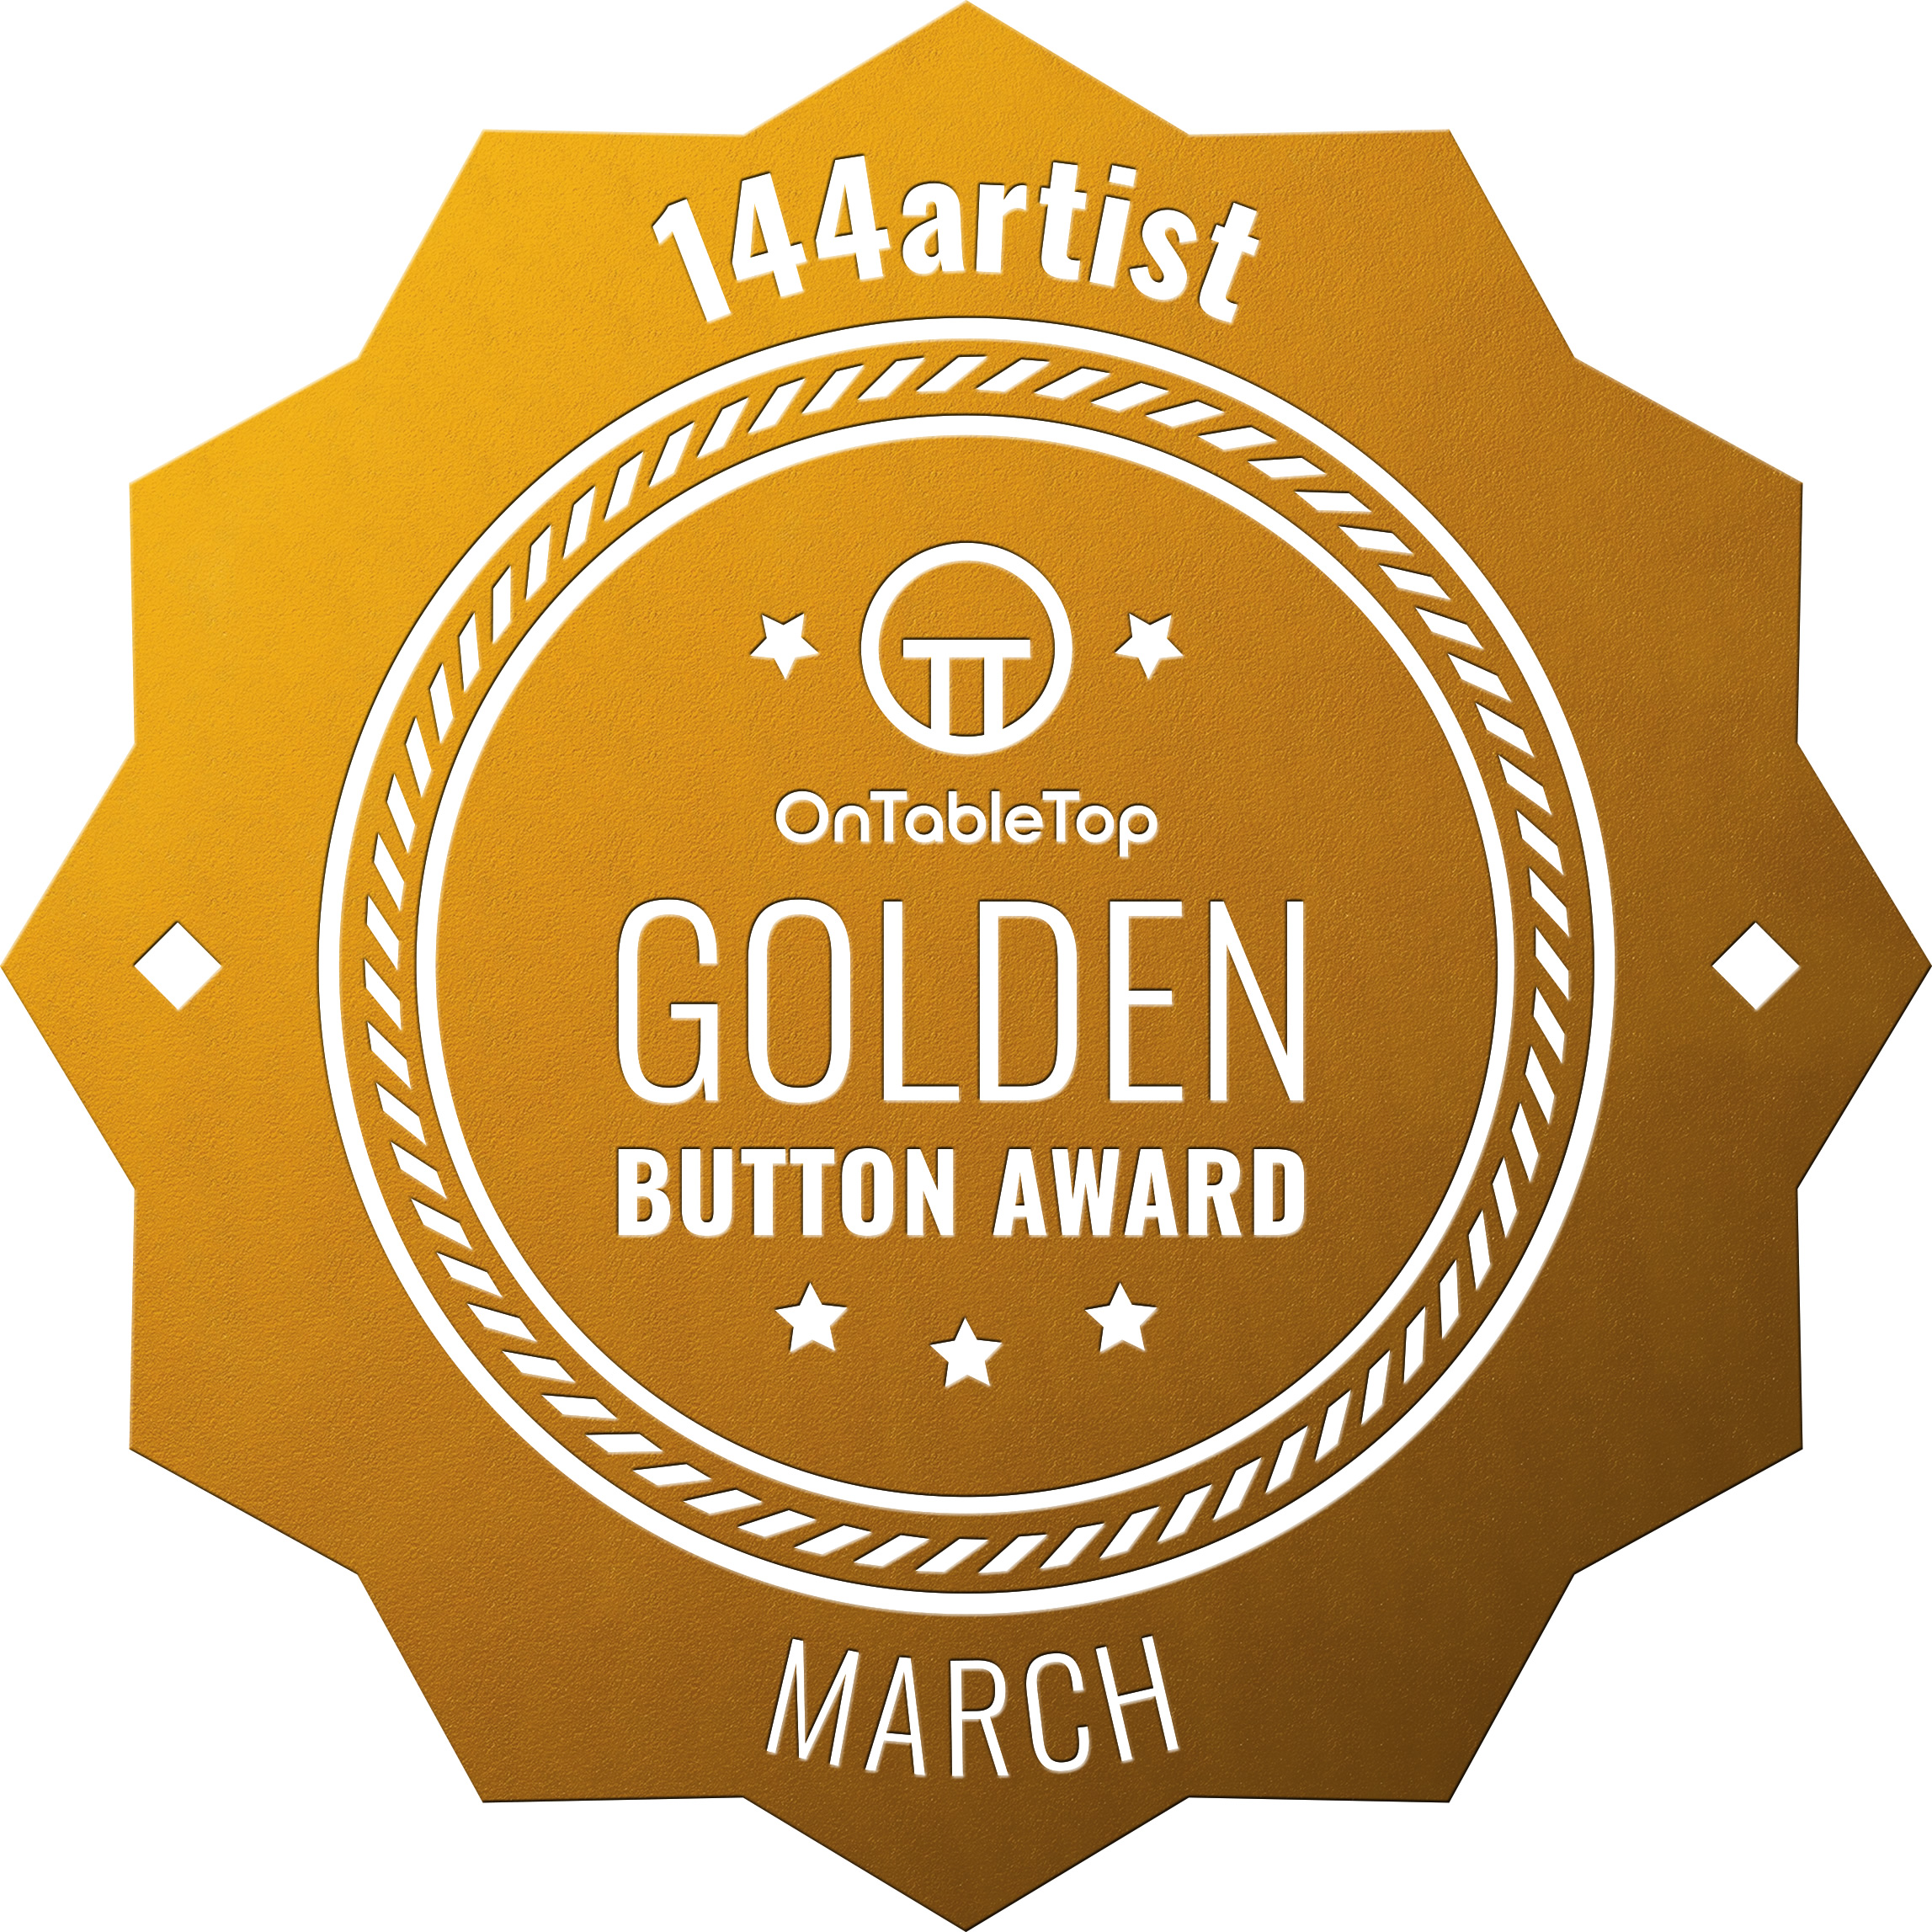 144artist-Golden-Button-March-2021